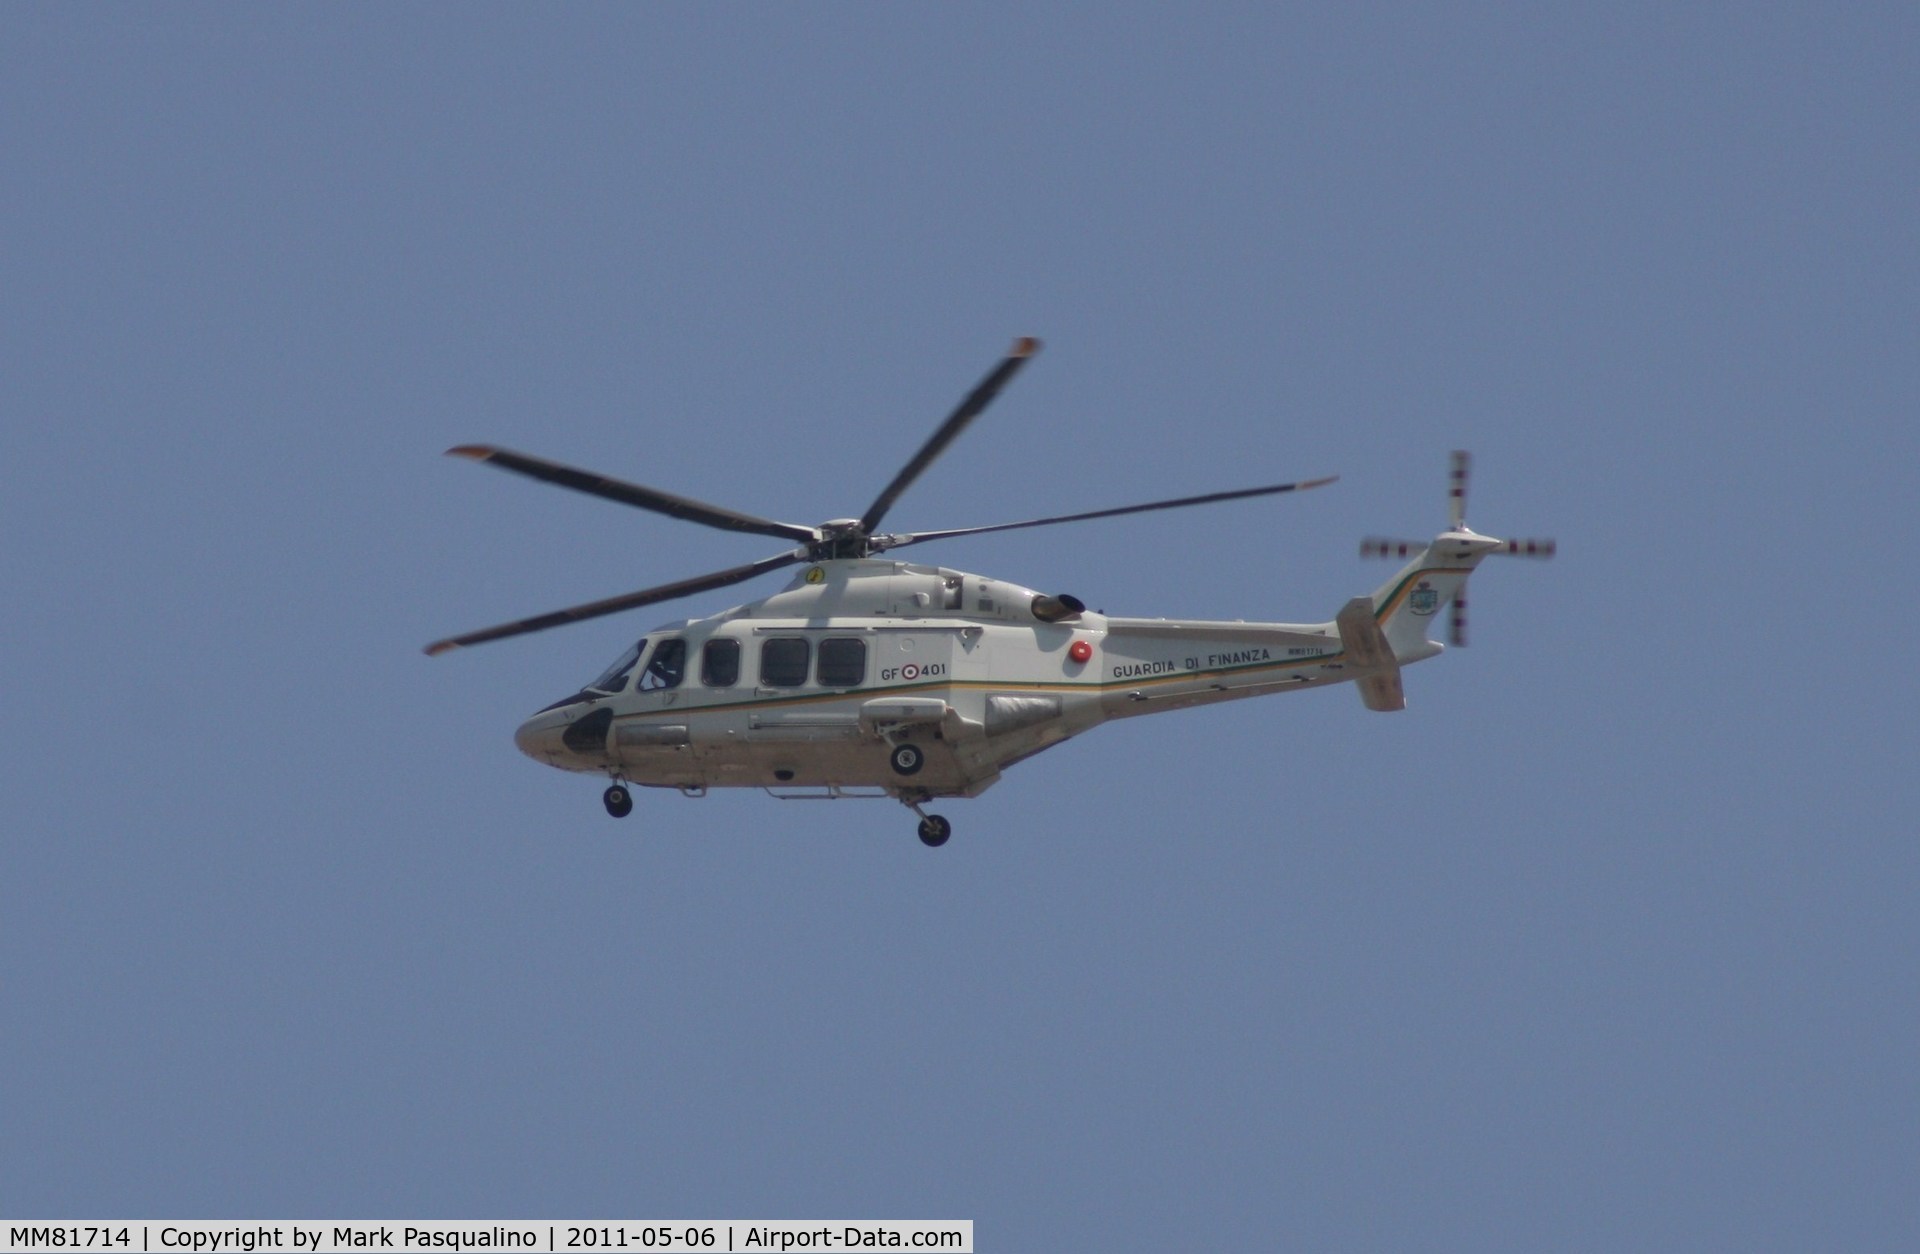 MM81714, 2007 AgustaWestland AW-139 C/N 31094, Agusta Westland AW-139